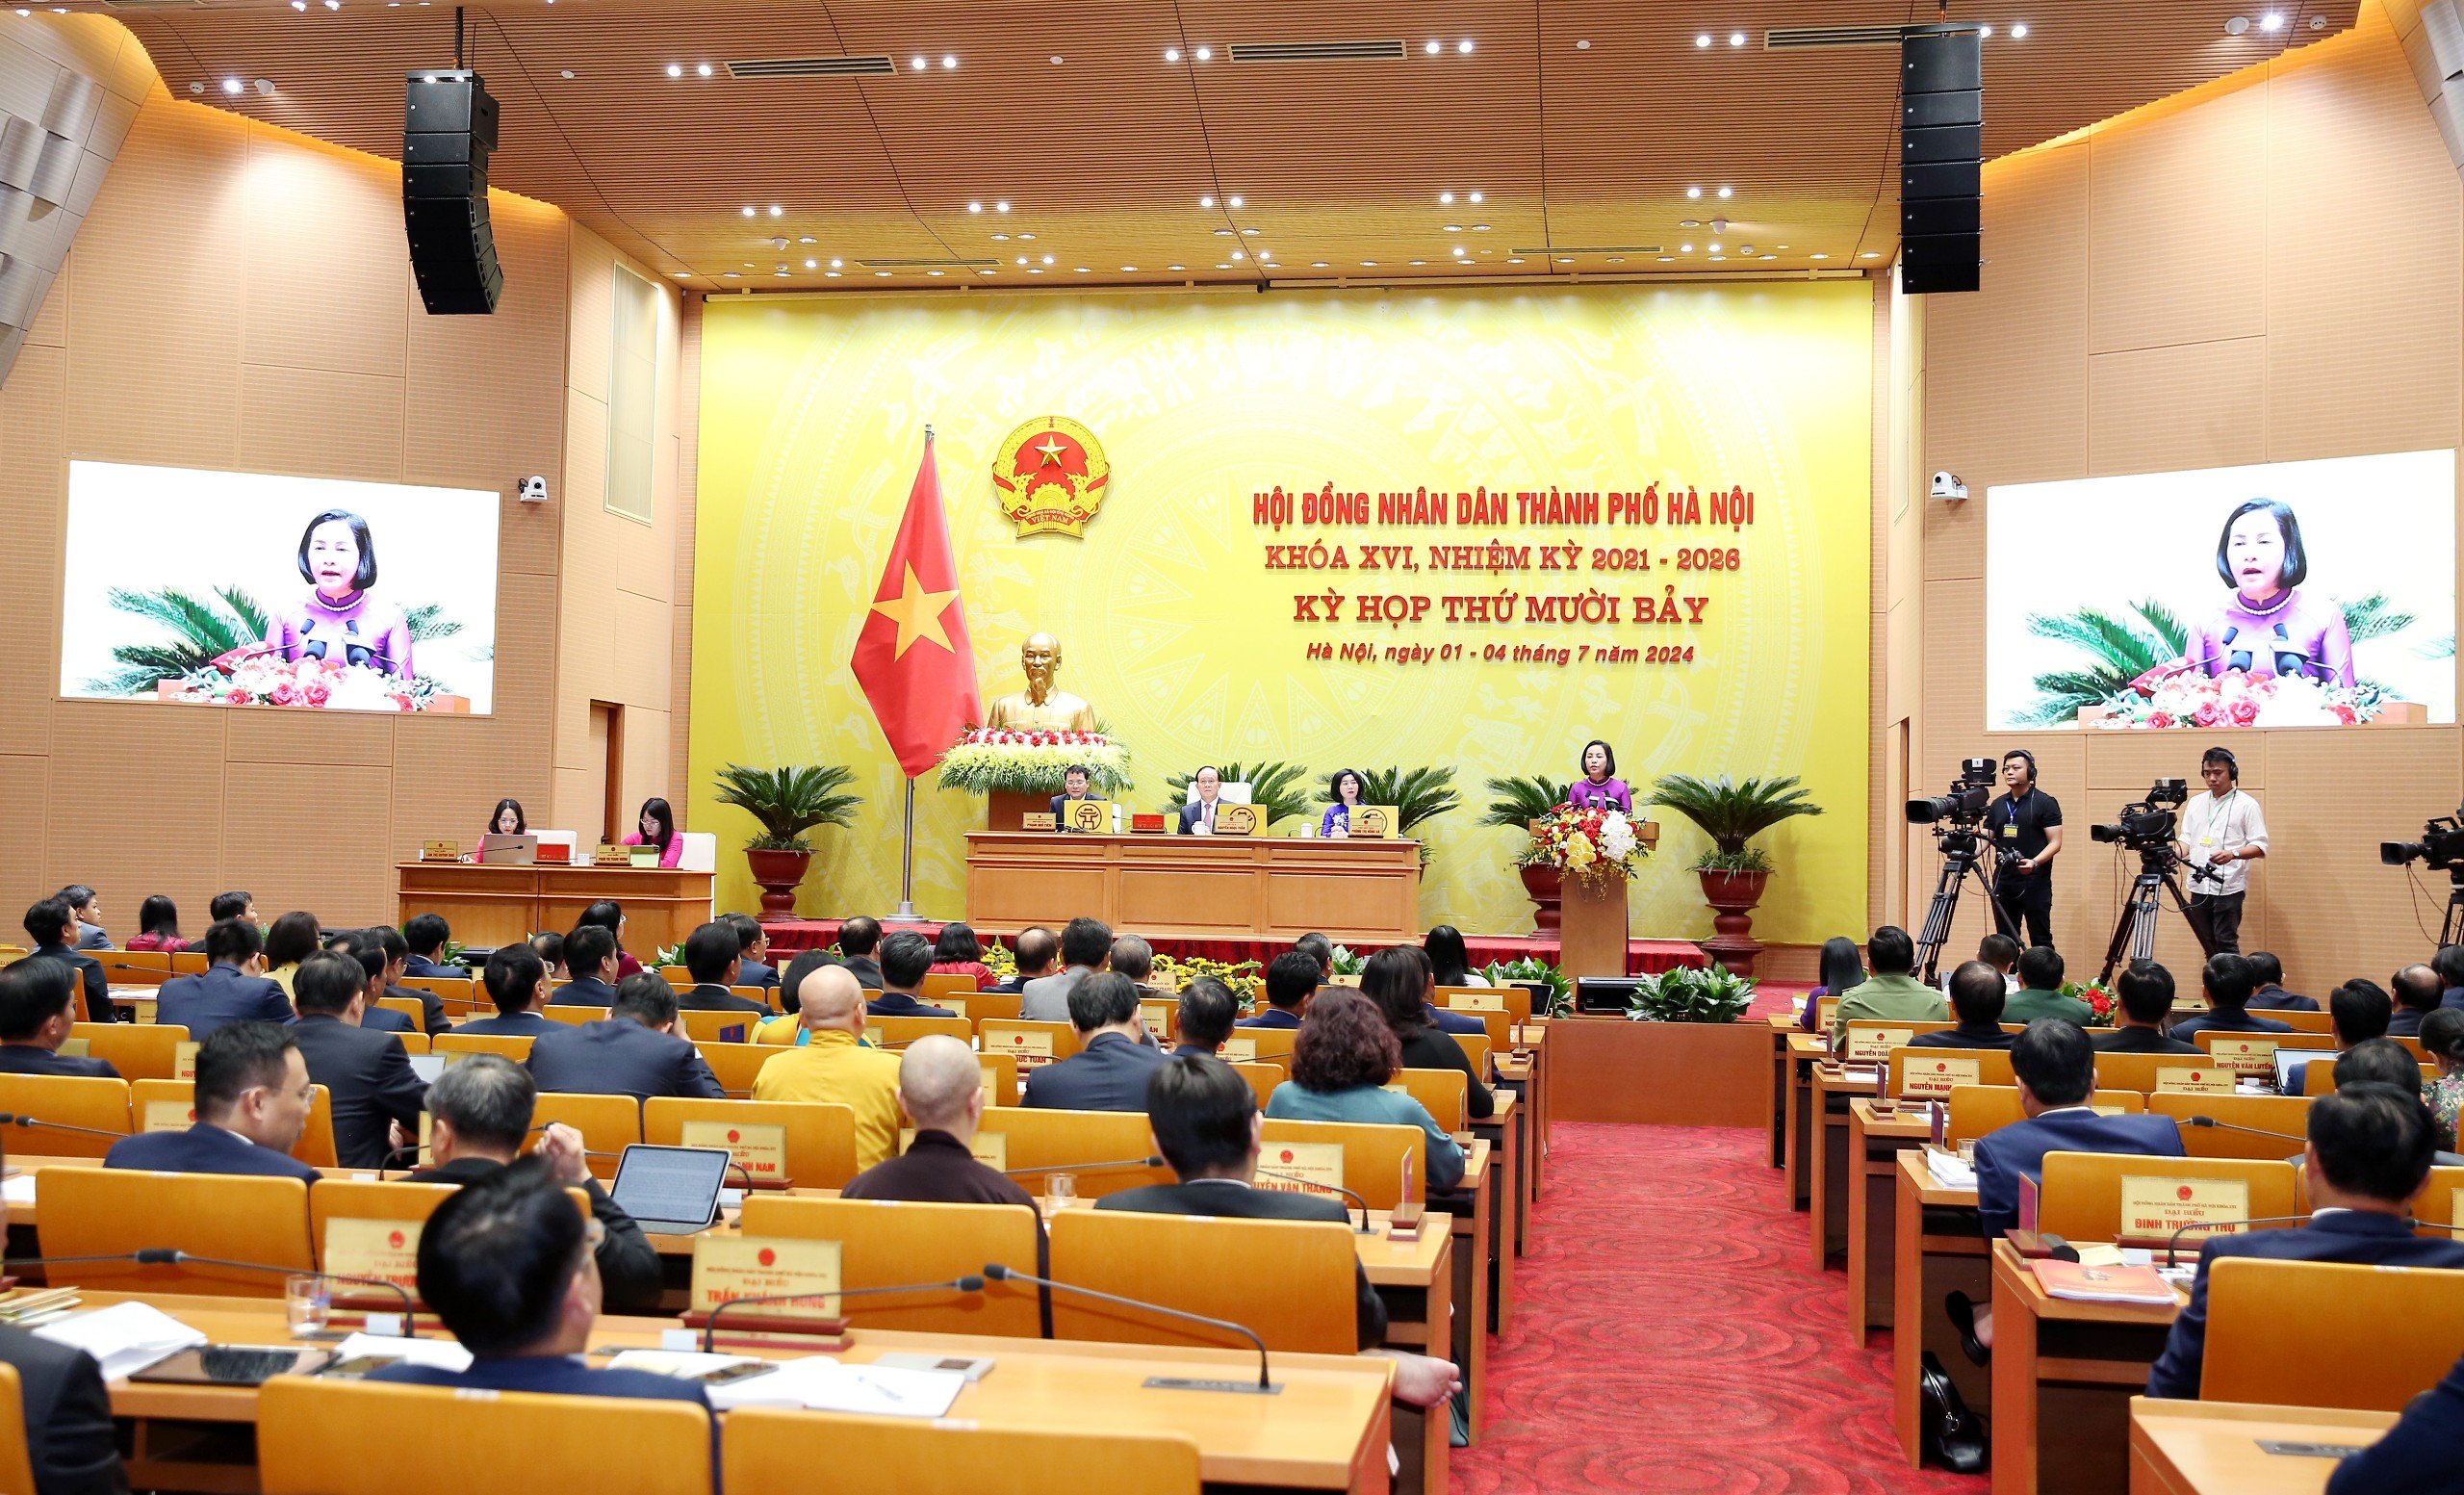 Phó Chủ tịch Quốc hội: Hà Nội cần nắm bắt tốt Luật Thủ đô sửa đổi, khai thác hiệu quả cơ chế đặc thù- Ảnh 2.